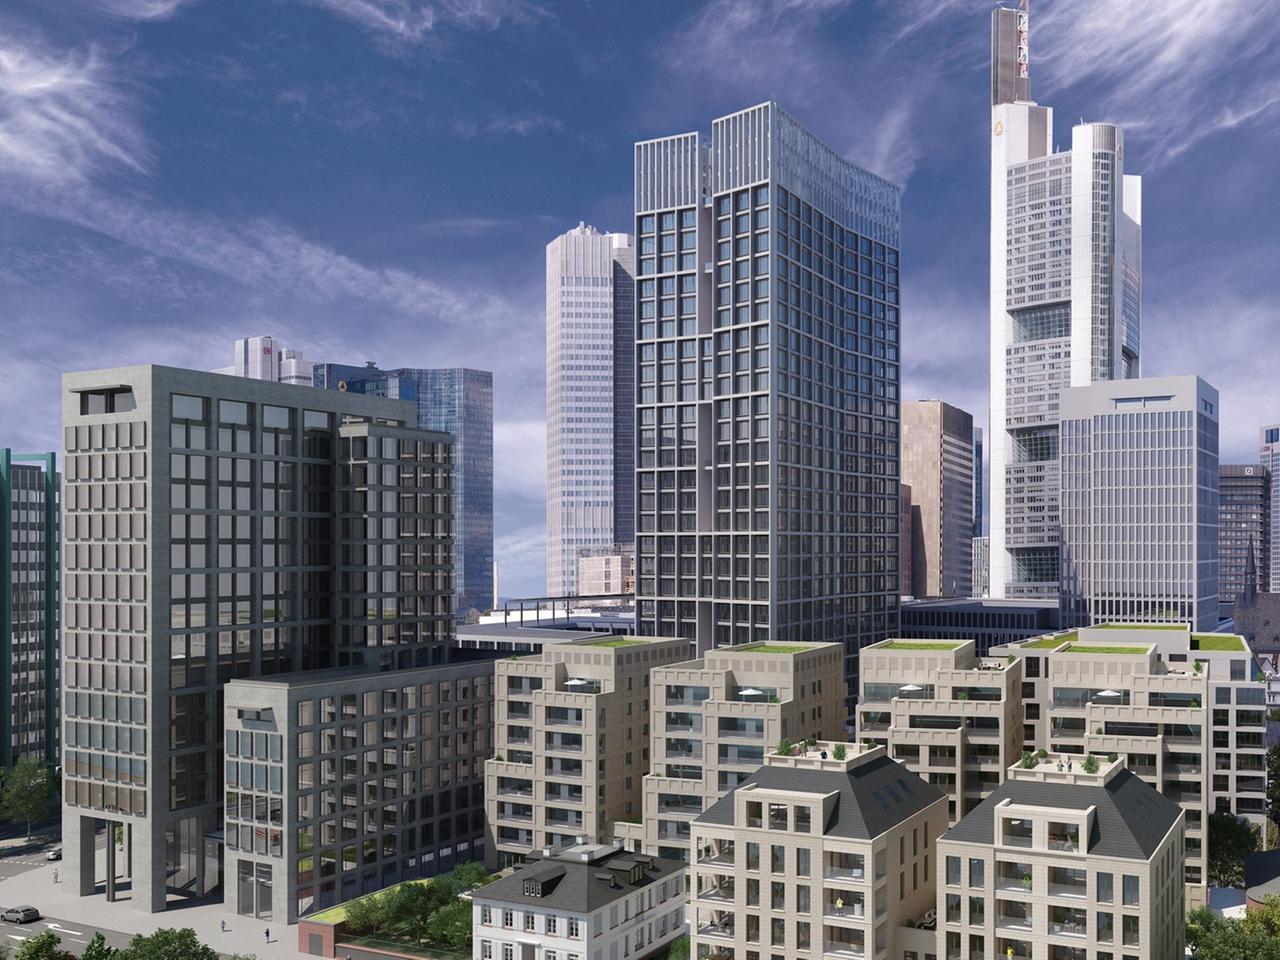 Die Computerillustration zeigt das zukünftige Luxusviertel "Main Tor" in Frankfurt/Main.